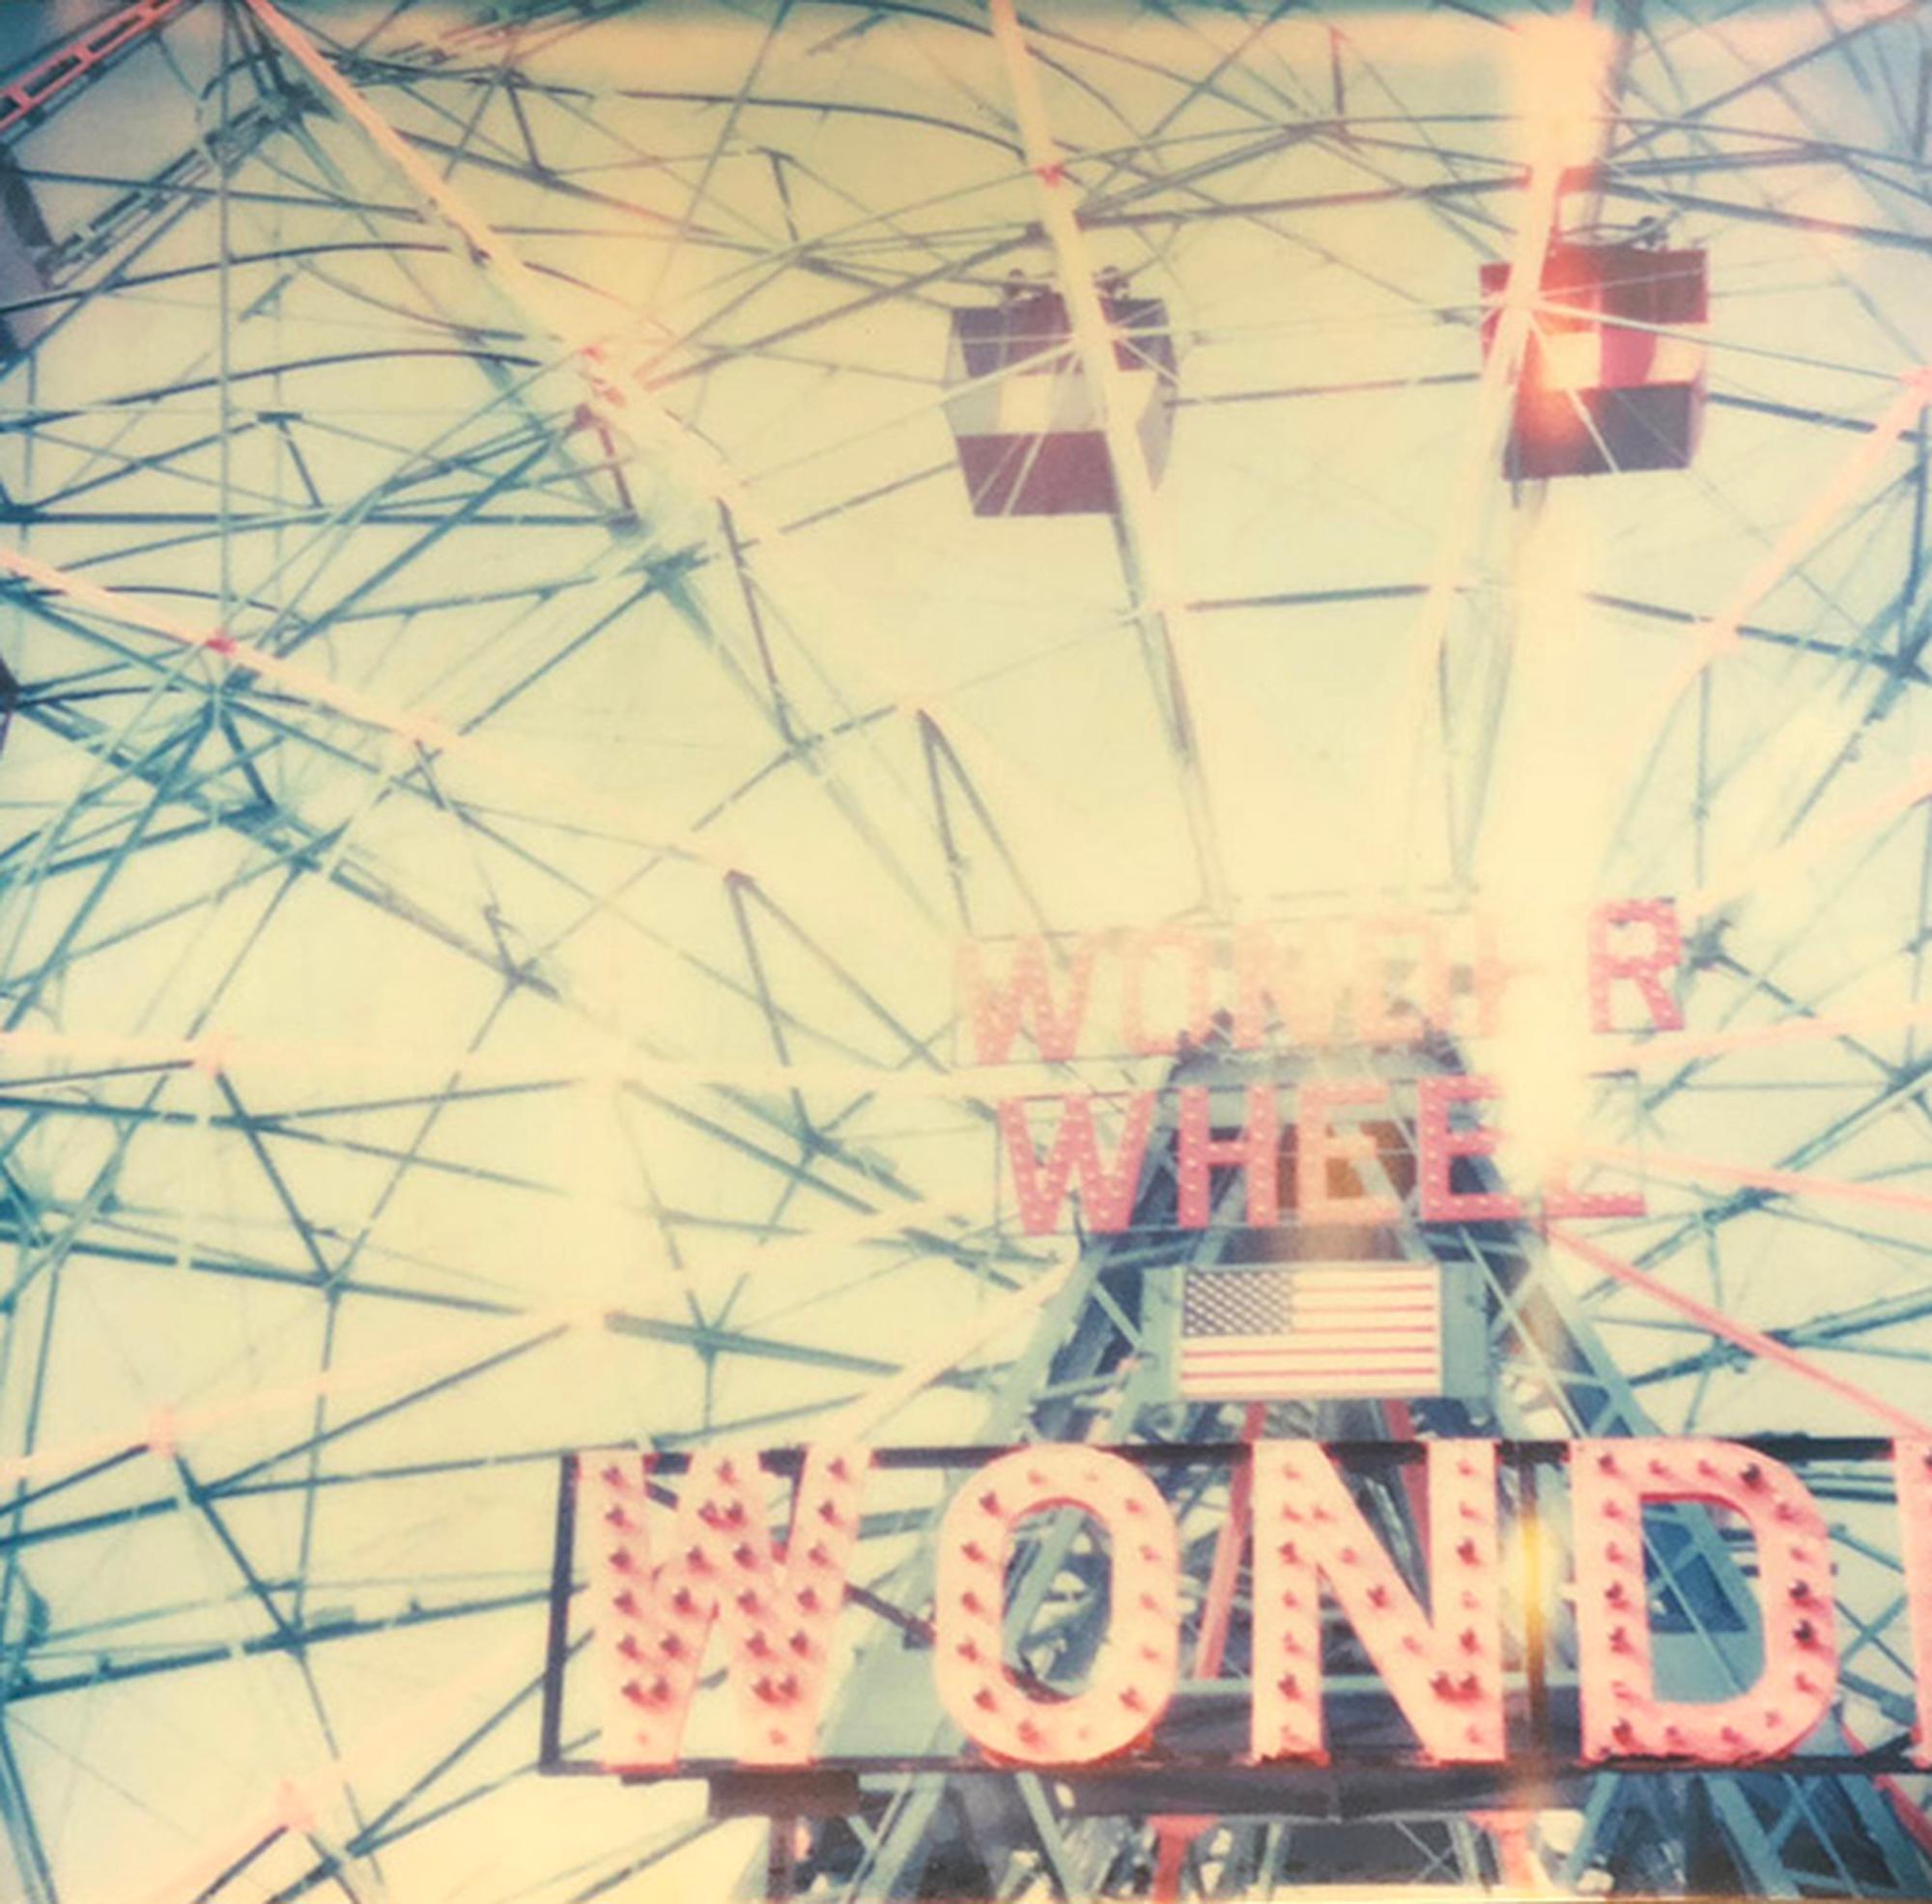 Wonder Wheel - Contemporary, Abstract, Landscape, Polaroid, expired, 21st - Photograph by Stefanie Schneider